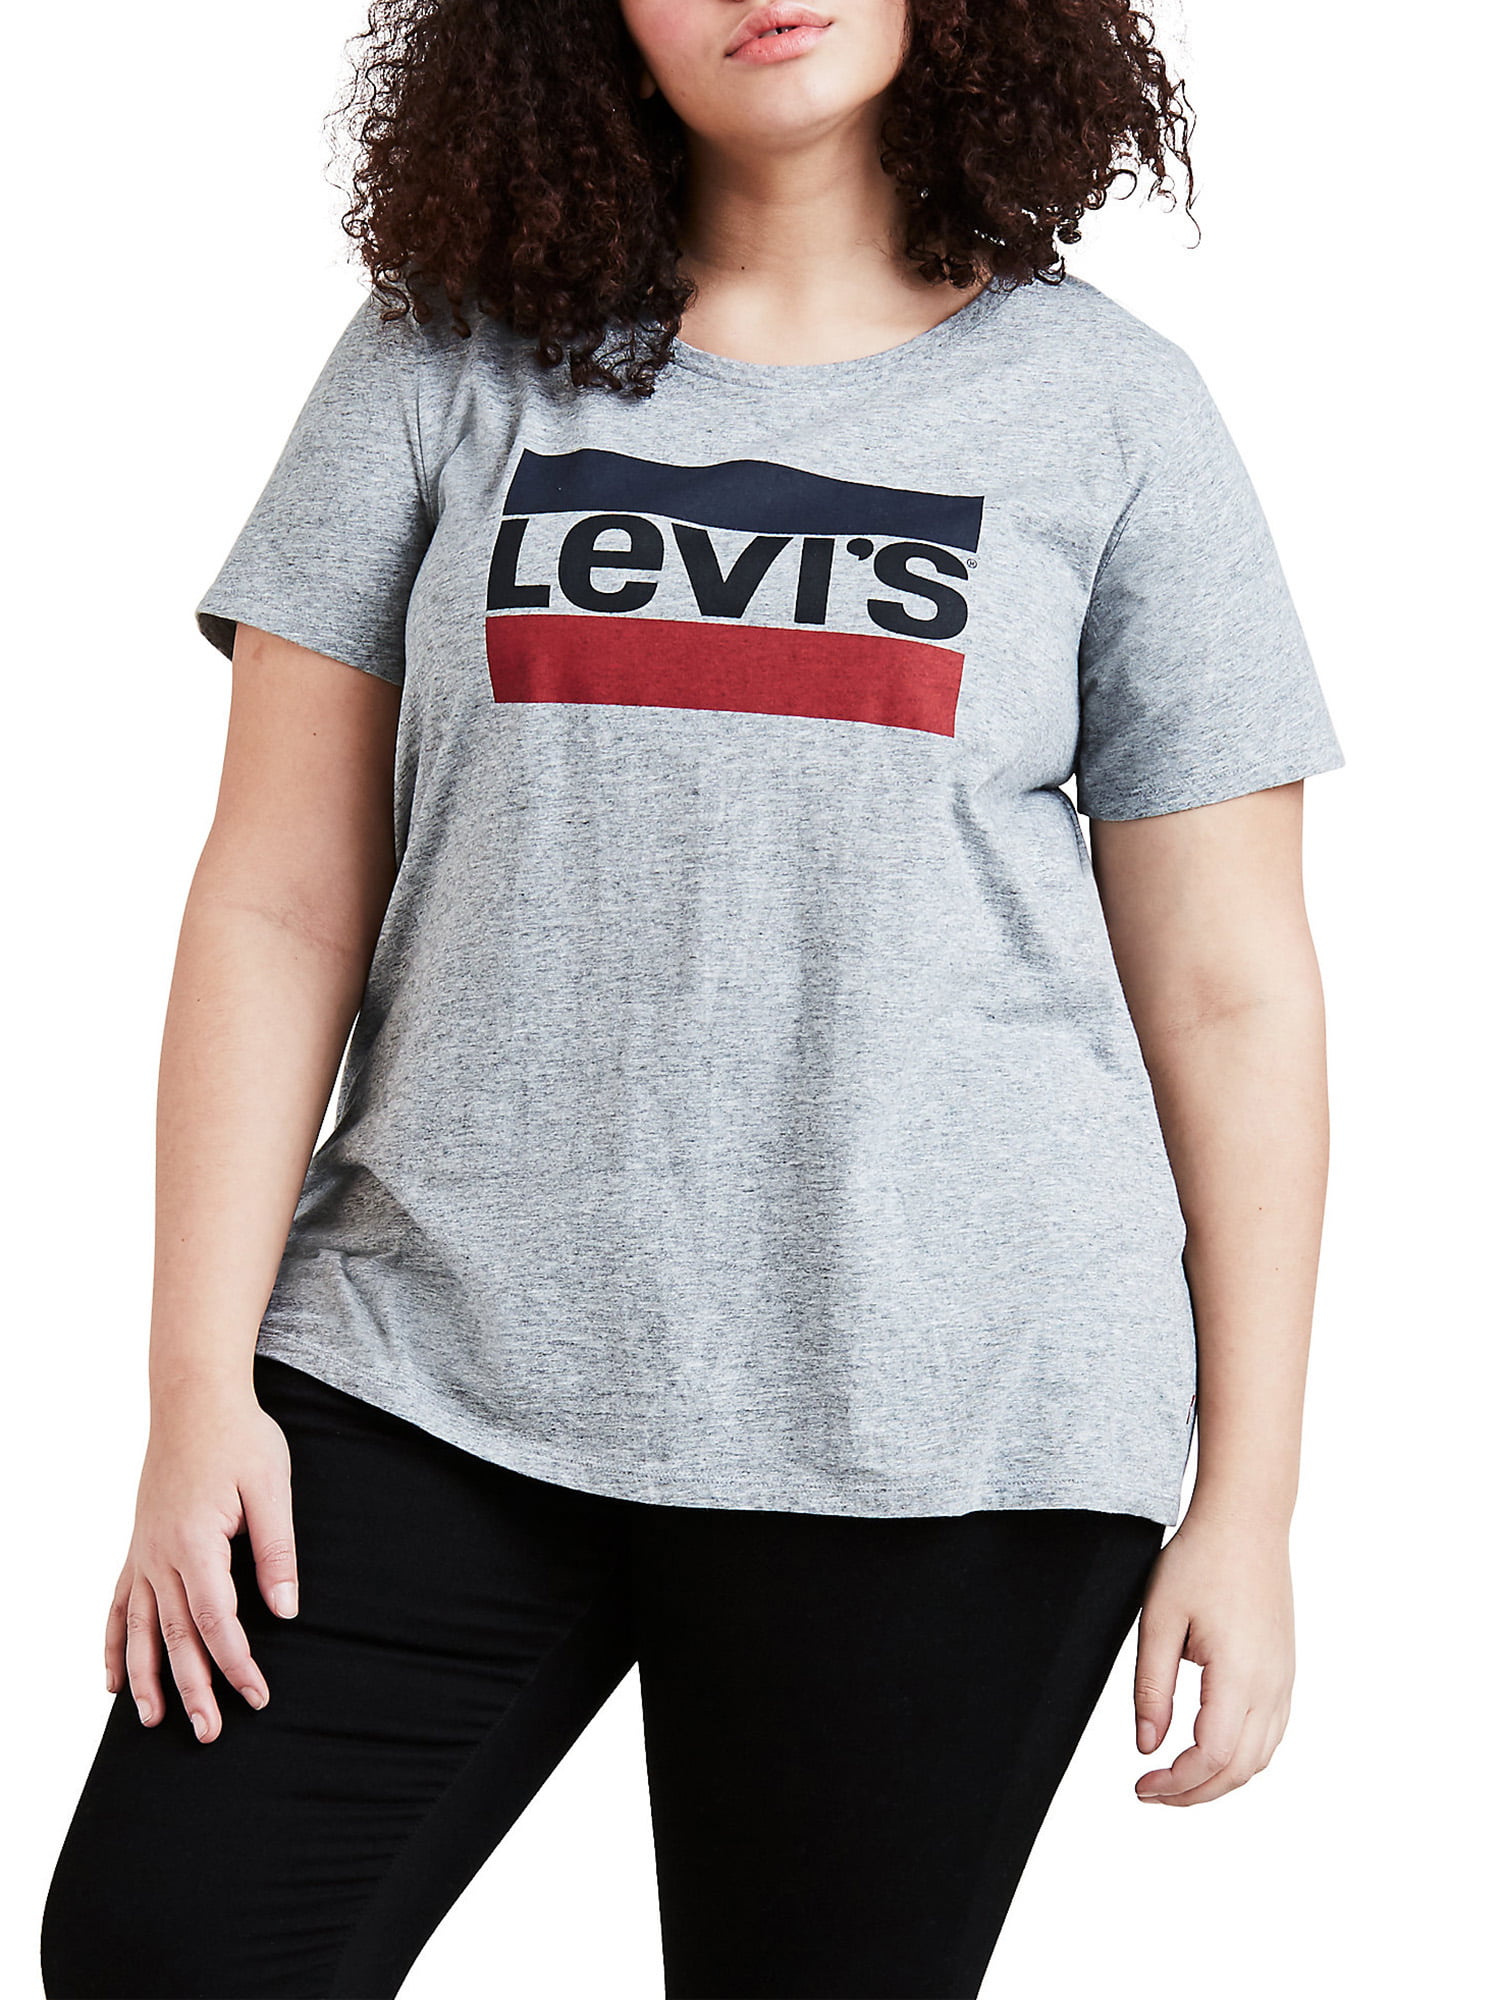 Levi's - Levi's Women's Plus Size 